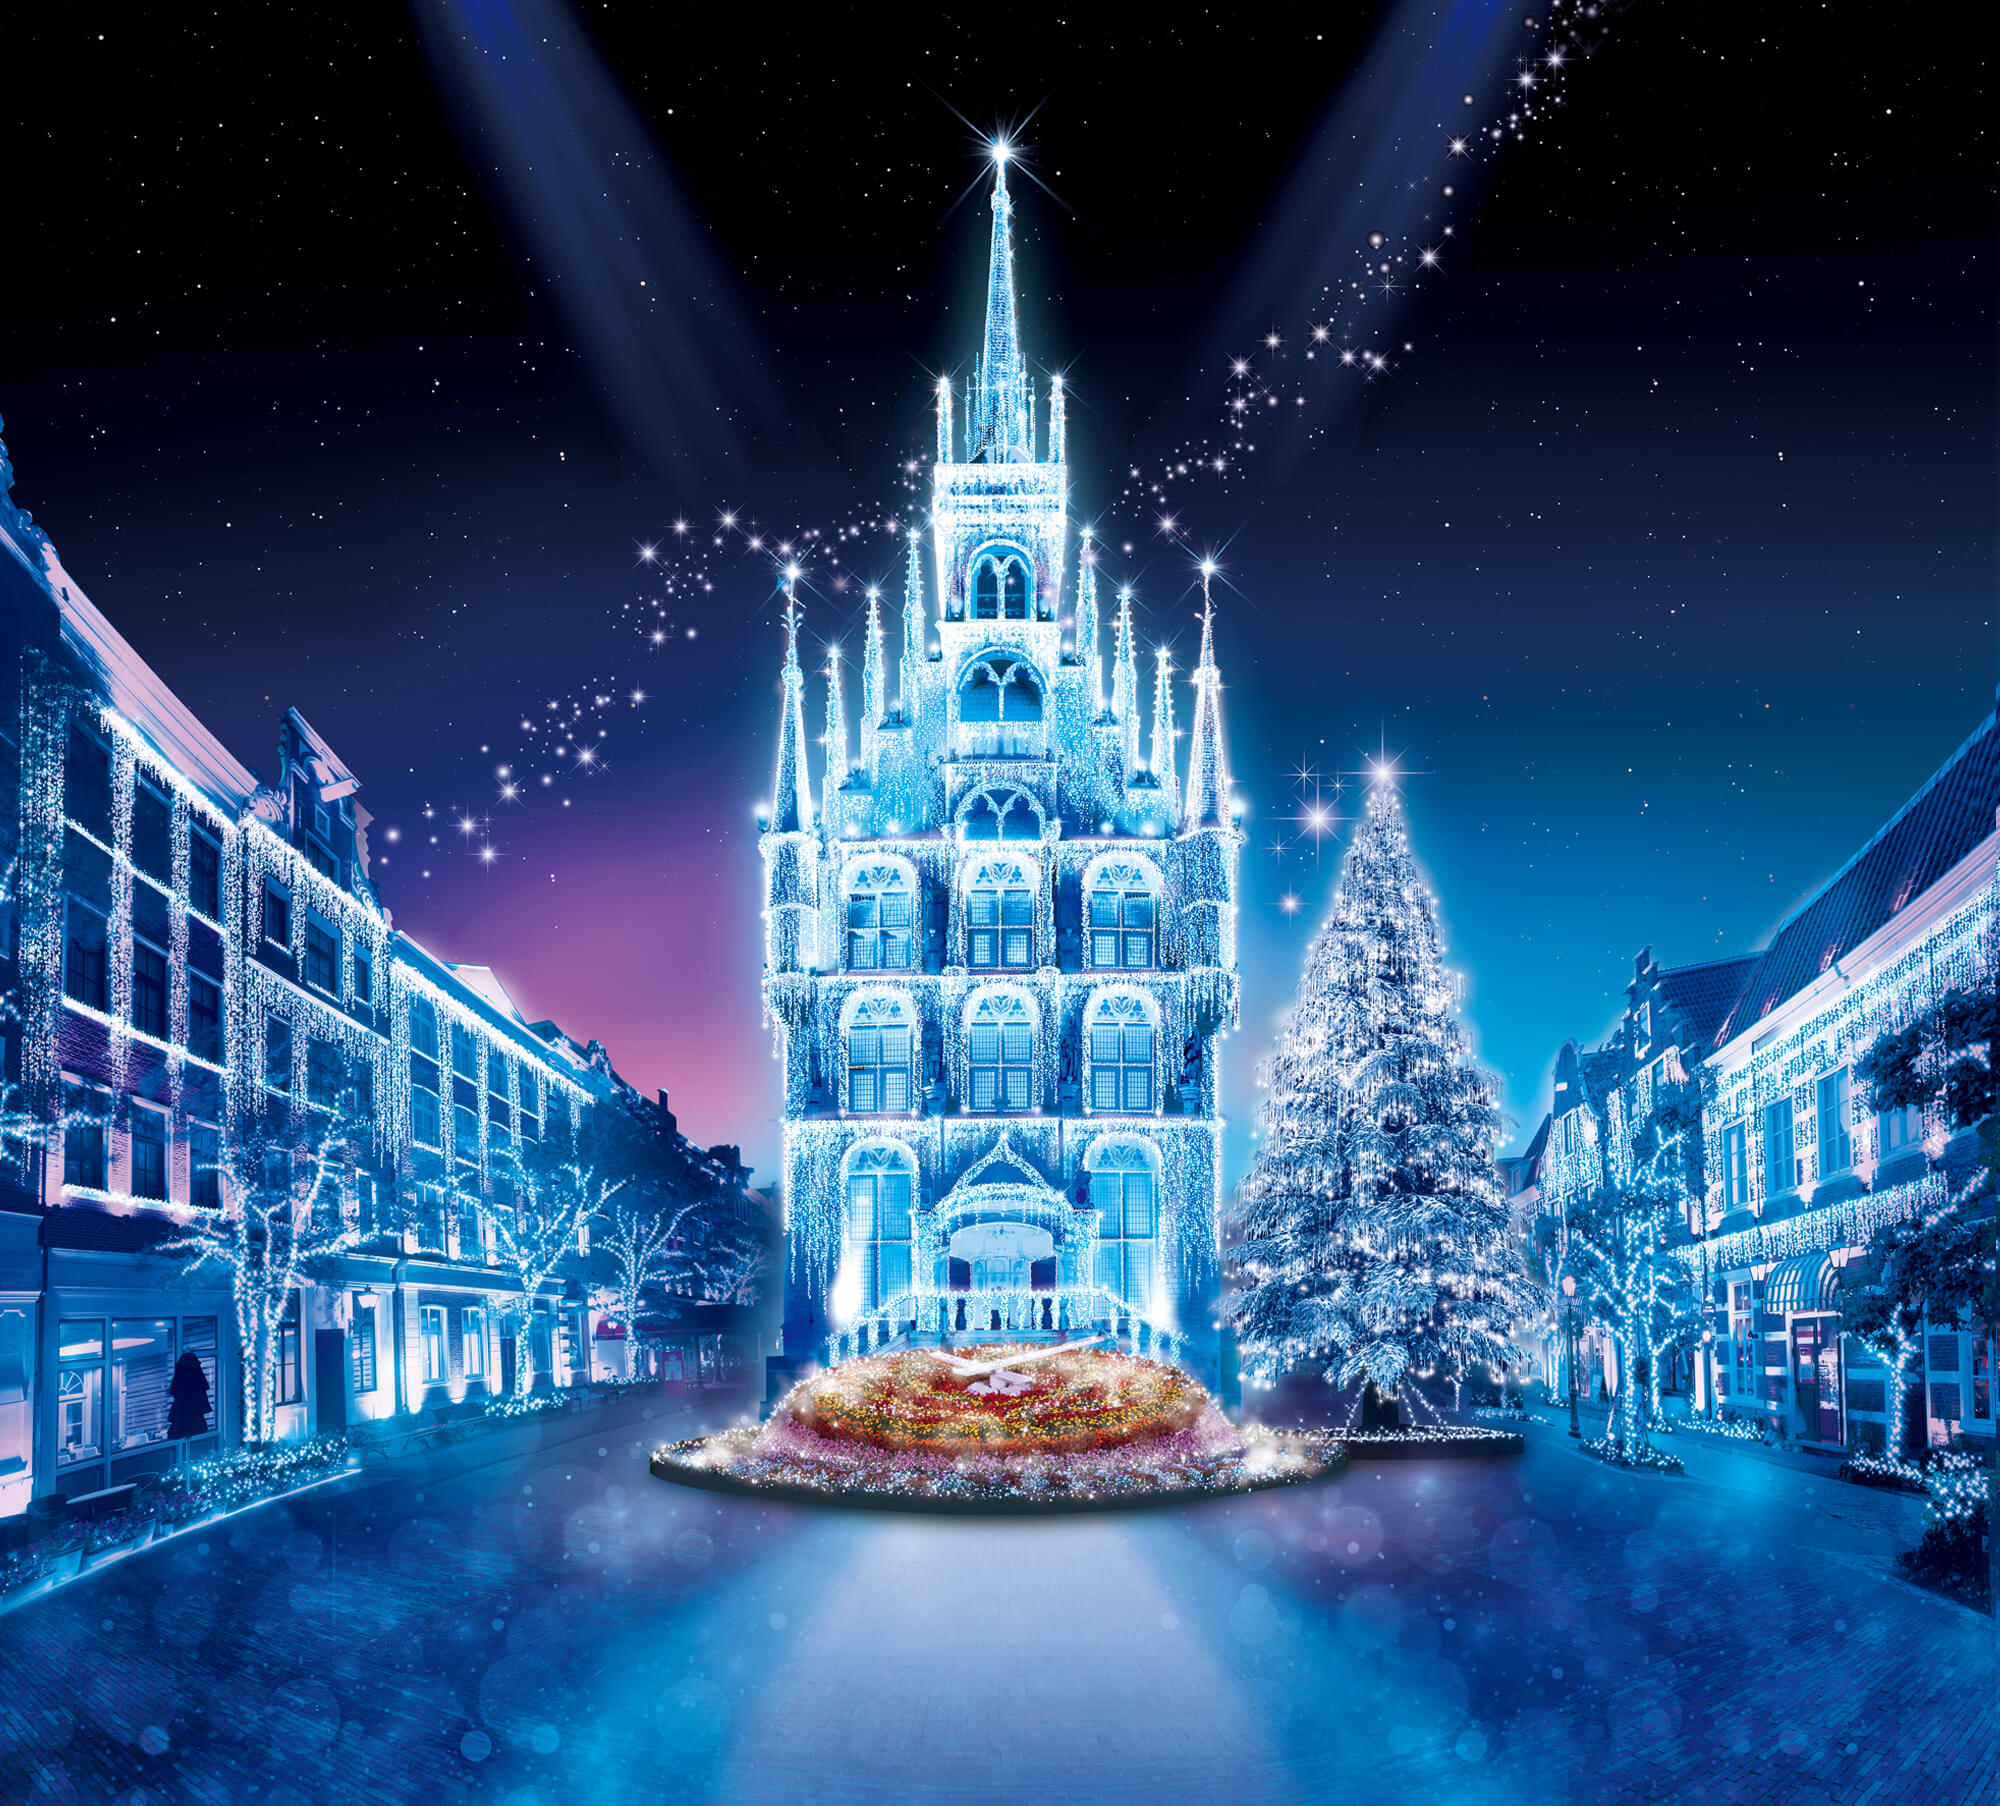 世界最大1 300万球 光の王国 イベント ショー ハウステンボスリゾート